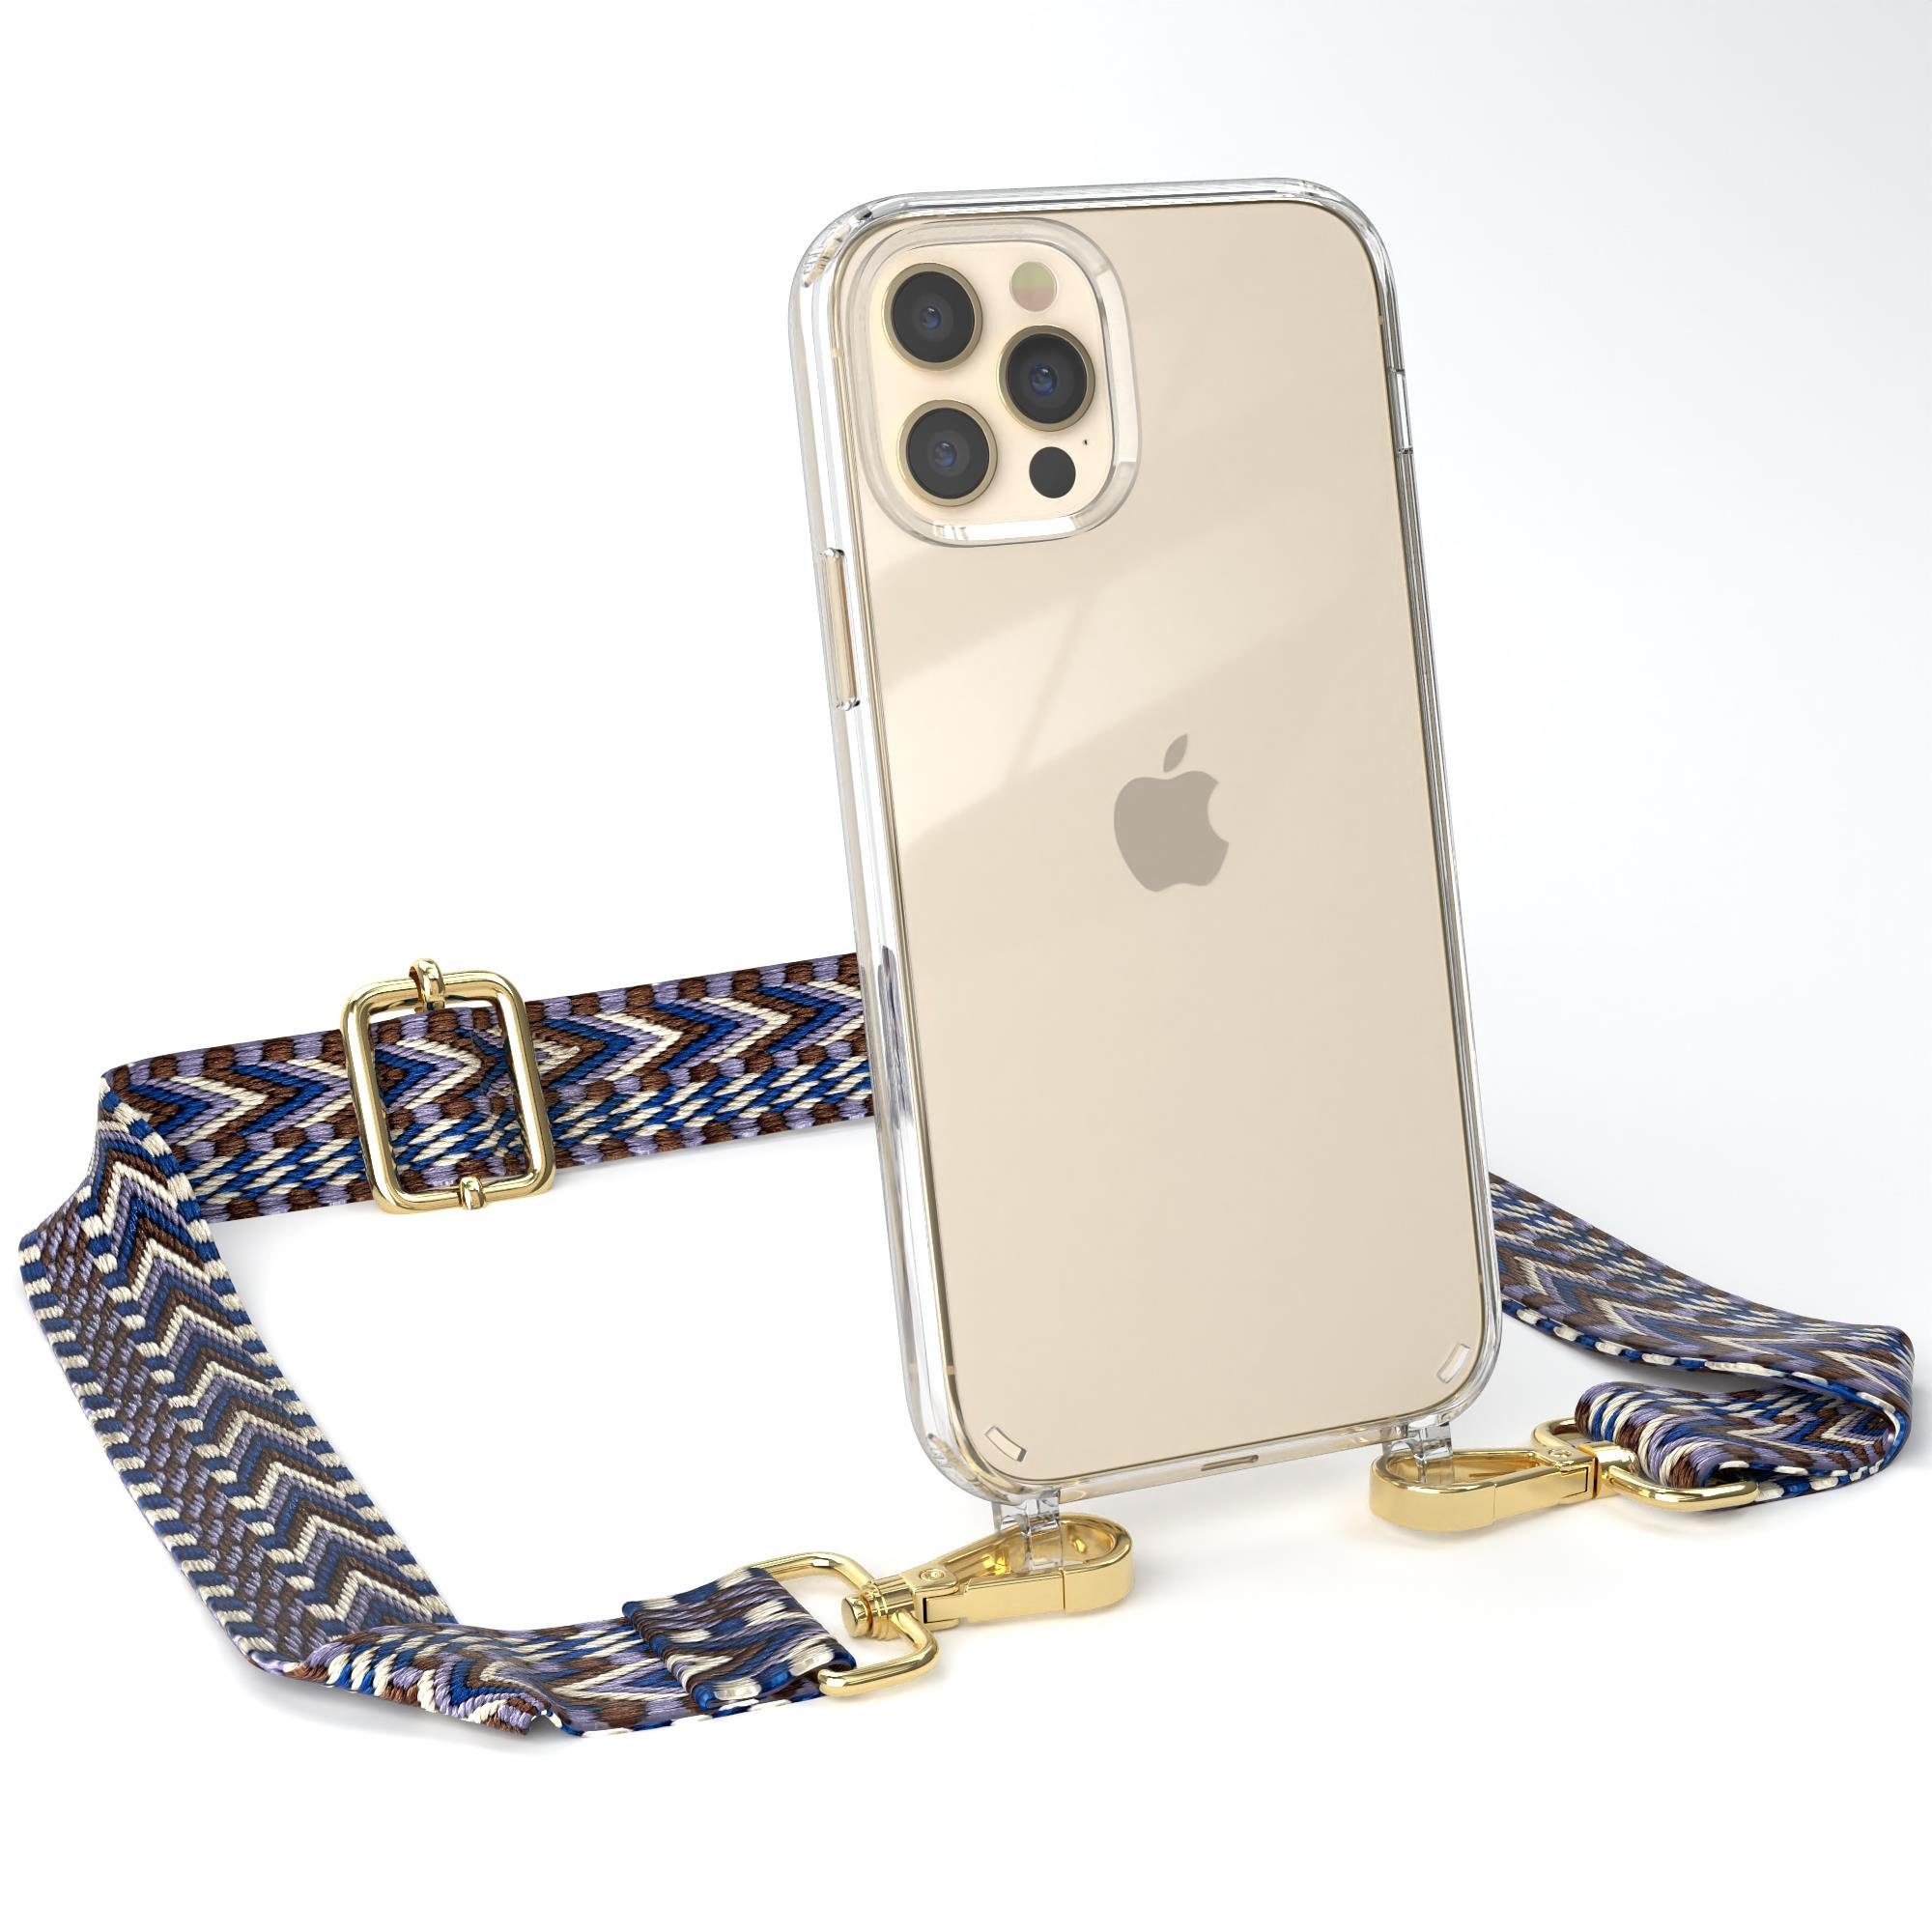 EAZY CASE Handykette Boho Umhängeband für iPhone 12 / iPhone 12 Pro 6,1 Zoll, Phone Chain nutzbar als Bauchtasche Body Case Riemchen mit Hülle Weiß